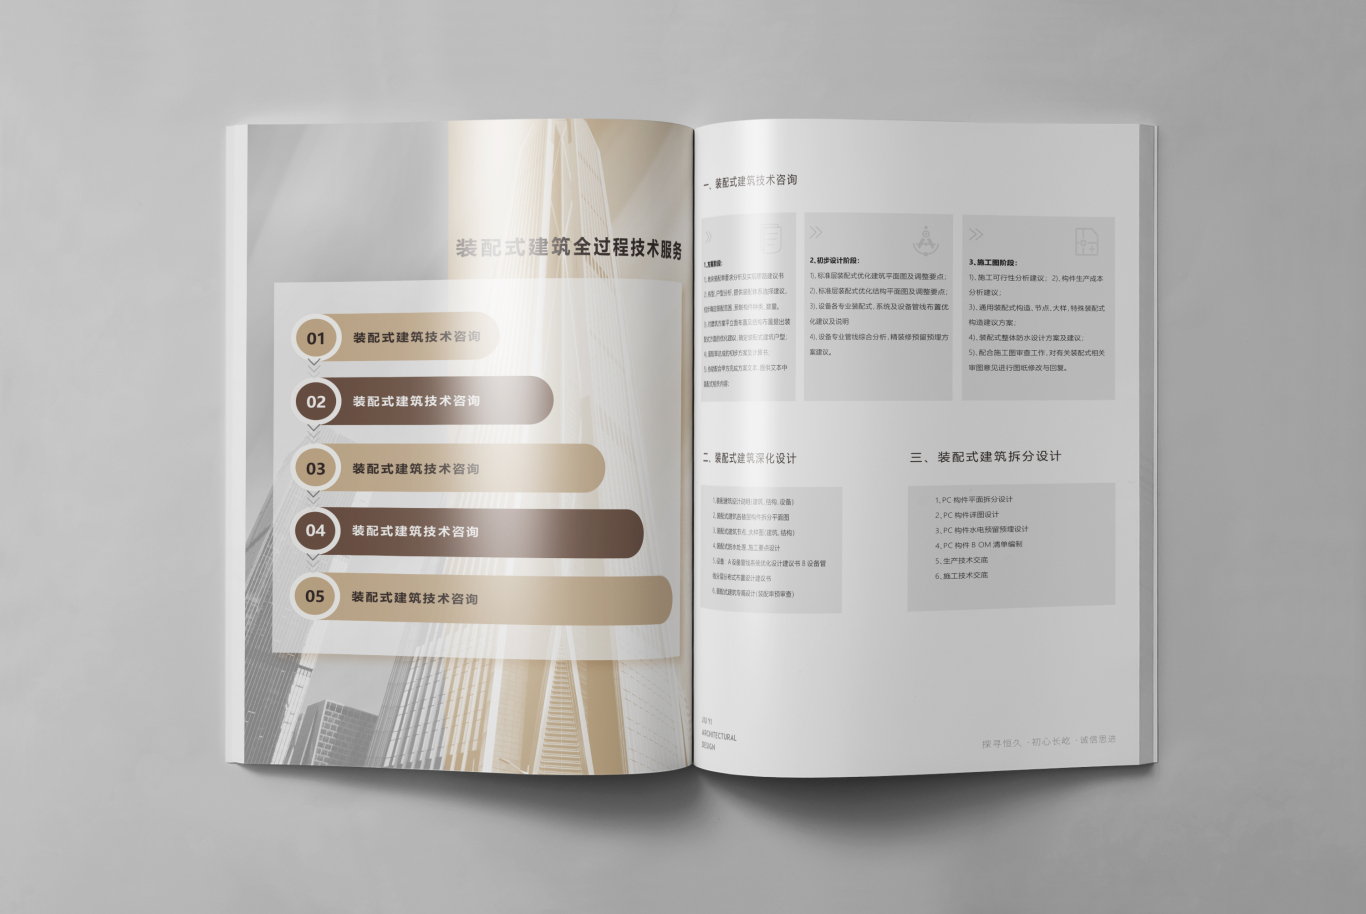 长沙玖屹建筑设计公司宣传画册设计图2